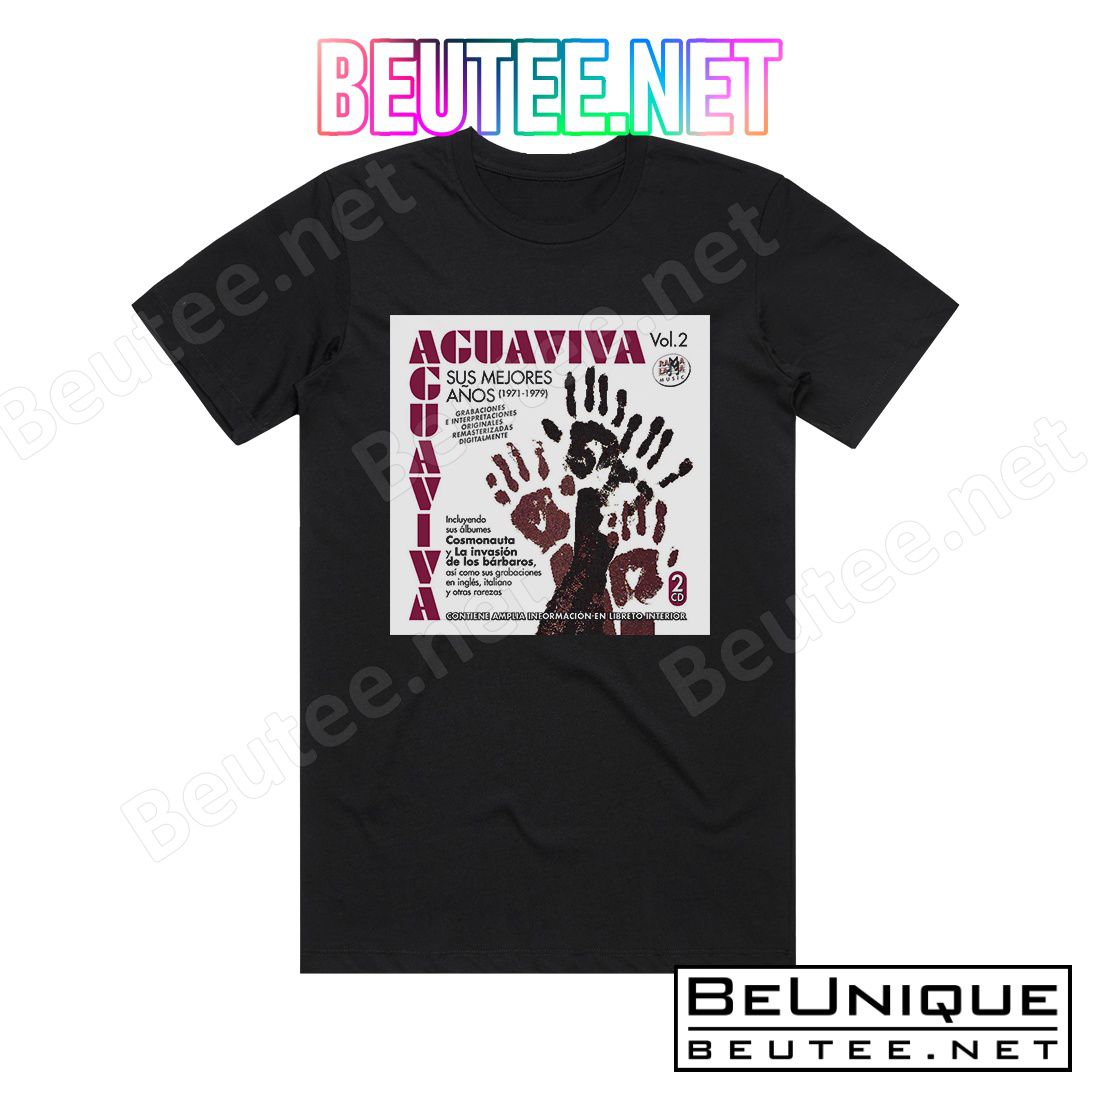 Aguaviva Sus Mejores Aos Vol 2 Album Cover T-shirt